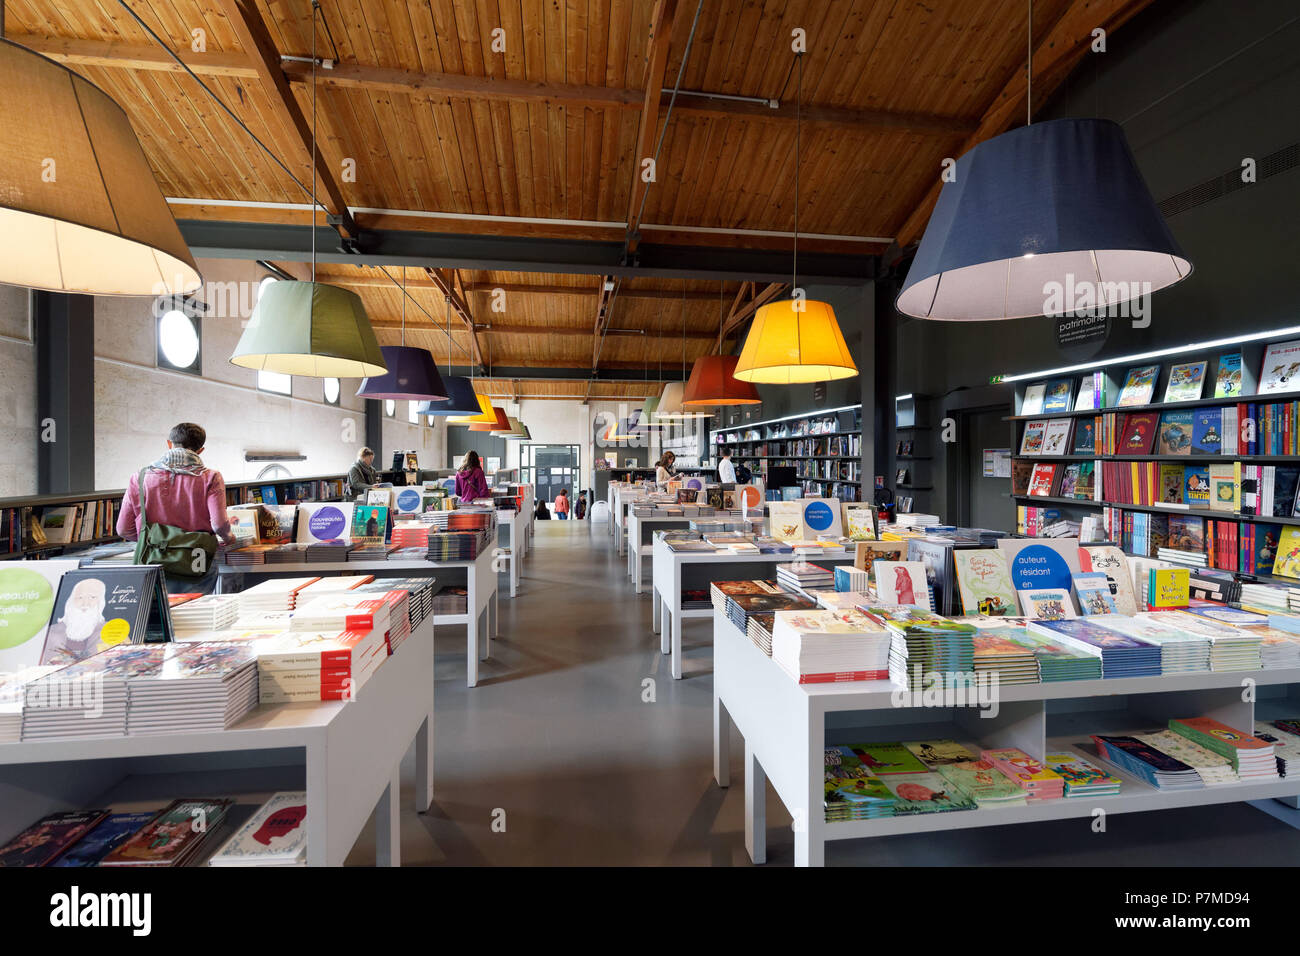 Frankreich, Charente, Angouleme, CIBDI, internationale Stadt der Comics und Bild, das Museum von Comics im Keller Magelis, die Buchhandlung installiert Stockfoto